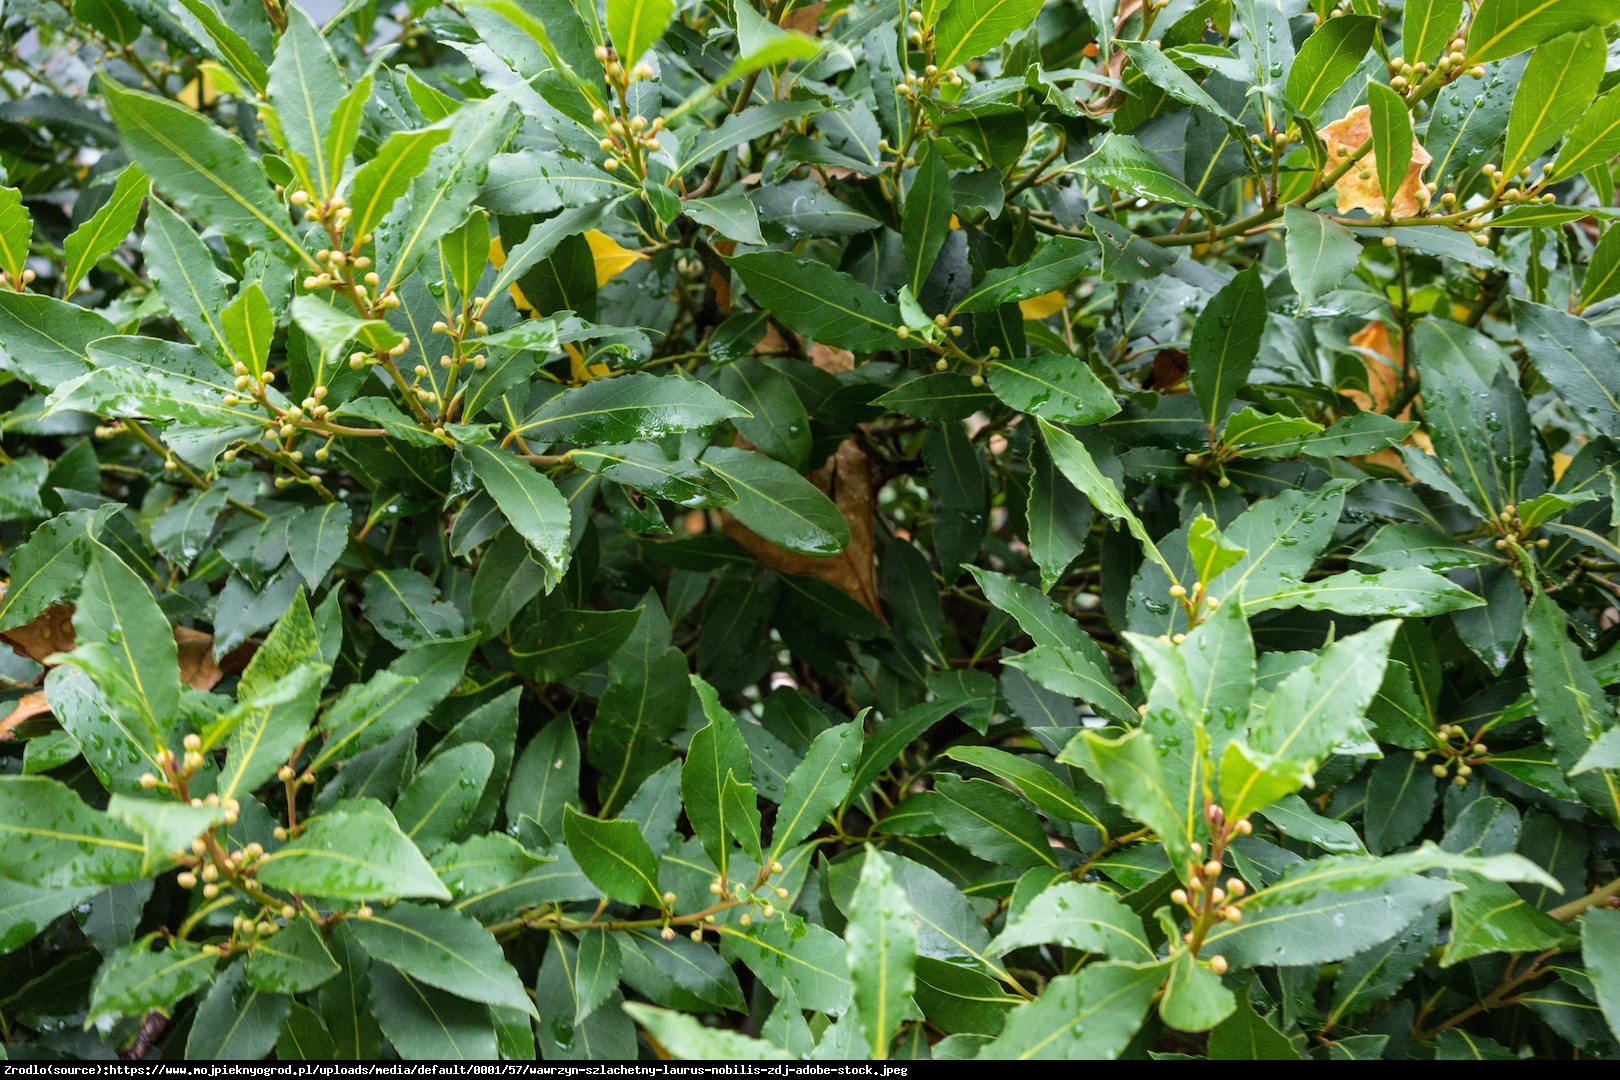 Wawrzyn szlachetny (Drzewo laurowe) - Laurus nobilis